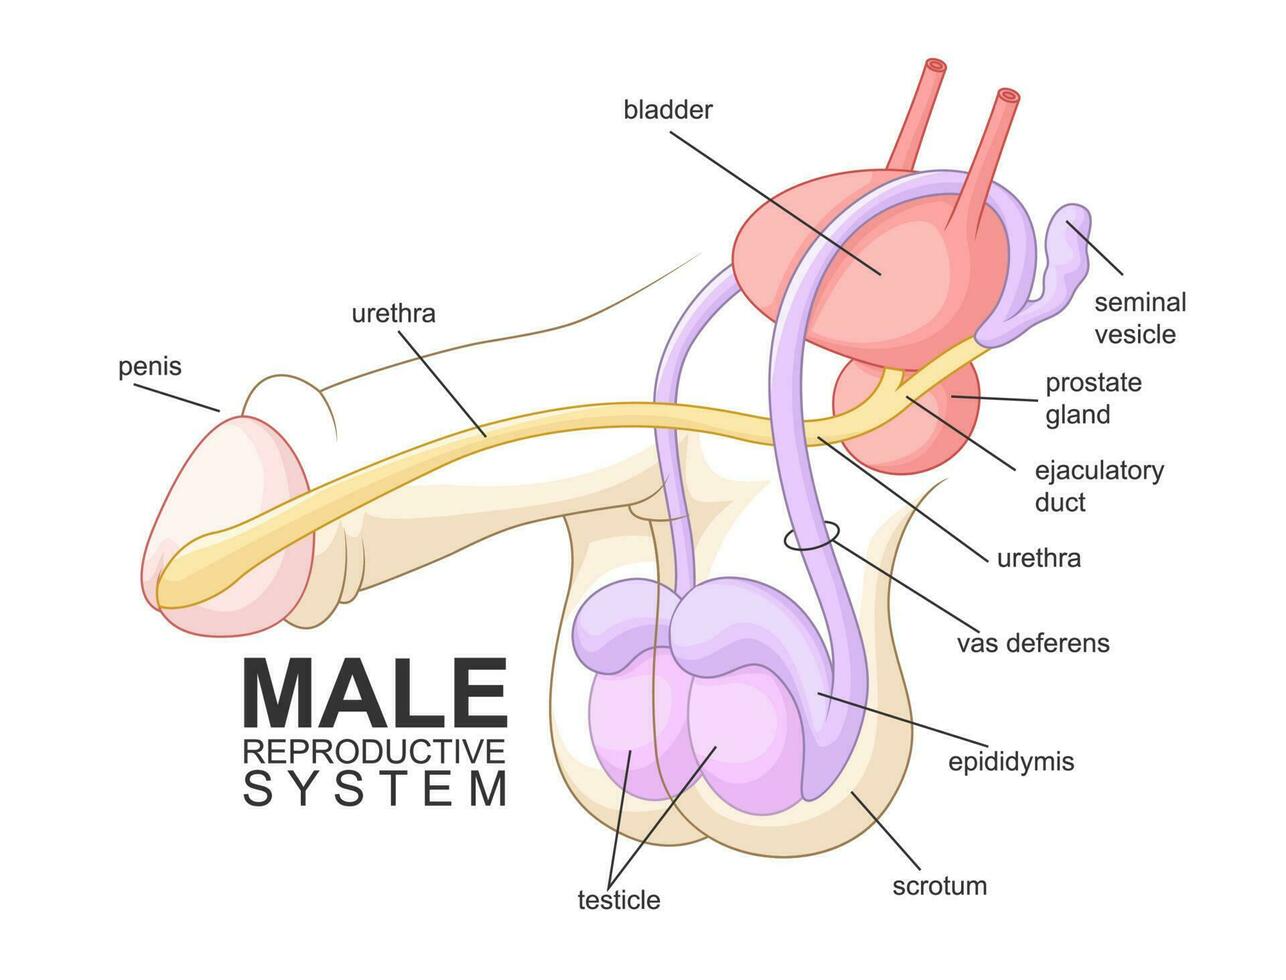 Masculin reproducteur système dessin animé, santé vecteur illustration